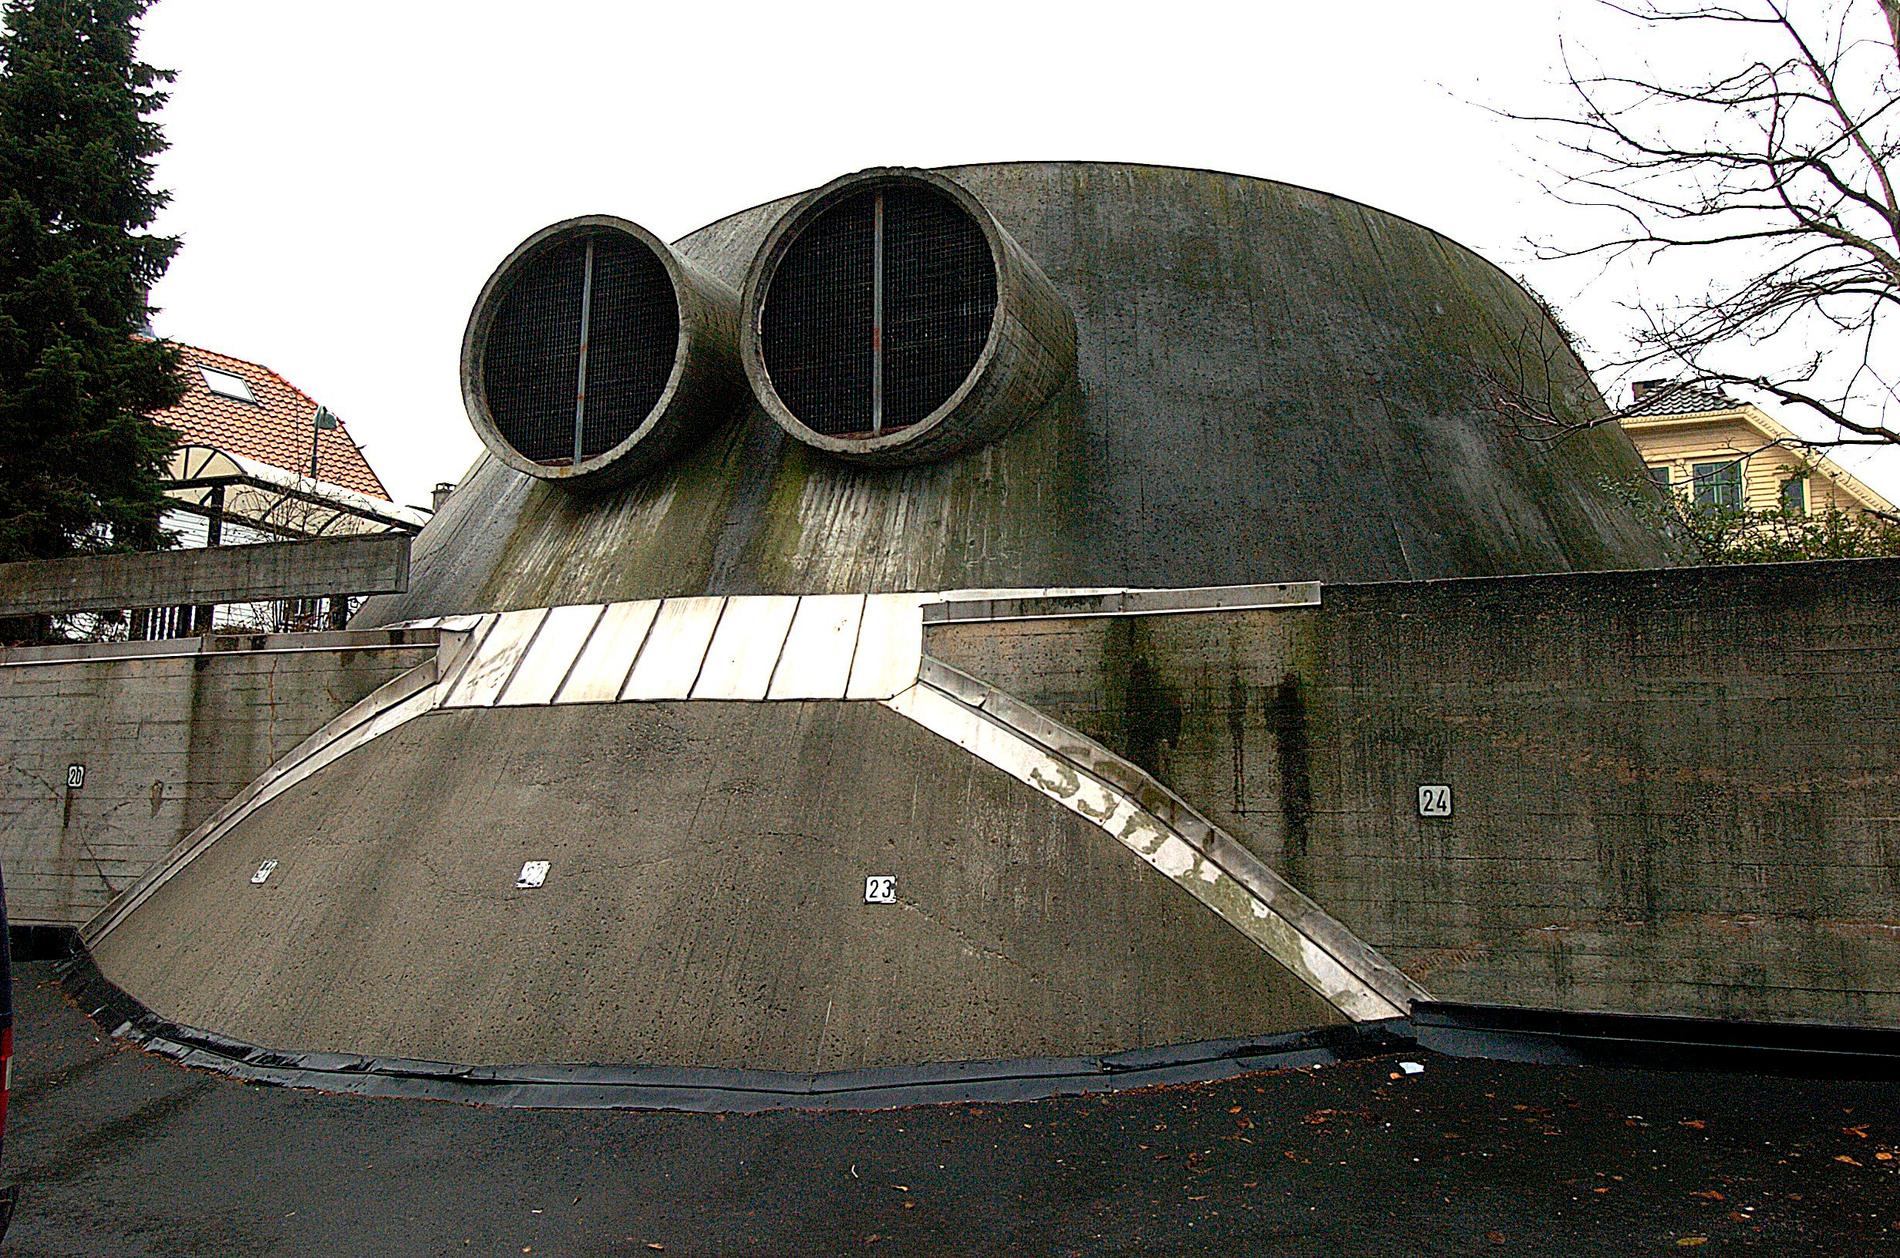 De som arkitekter for Stavanger svømmehall var tydeligvis over gjennomsnittet interessert i Star Wars. Denne lyssjakten kan vel sies å være en like så stor attraksjon som Trollpikken?